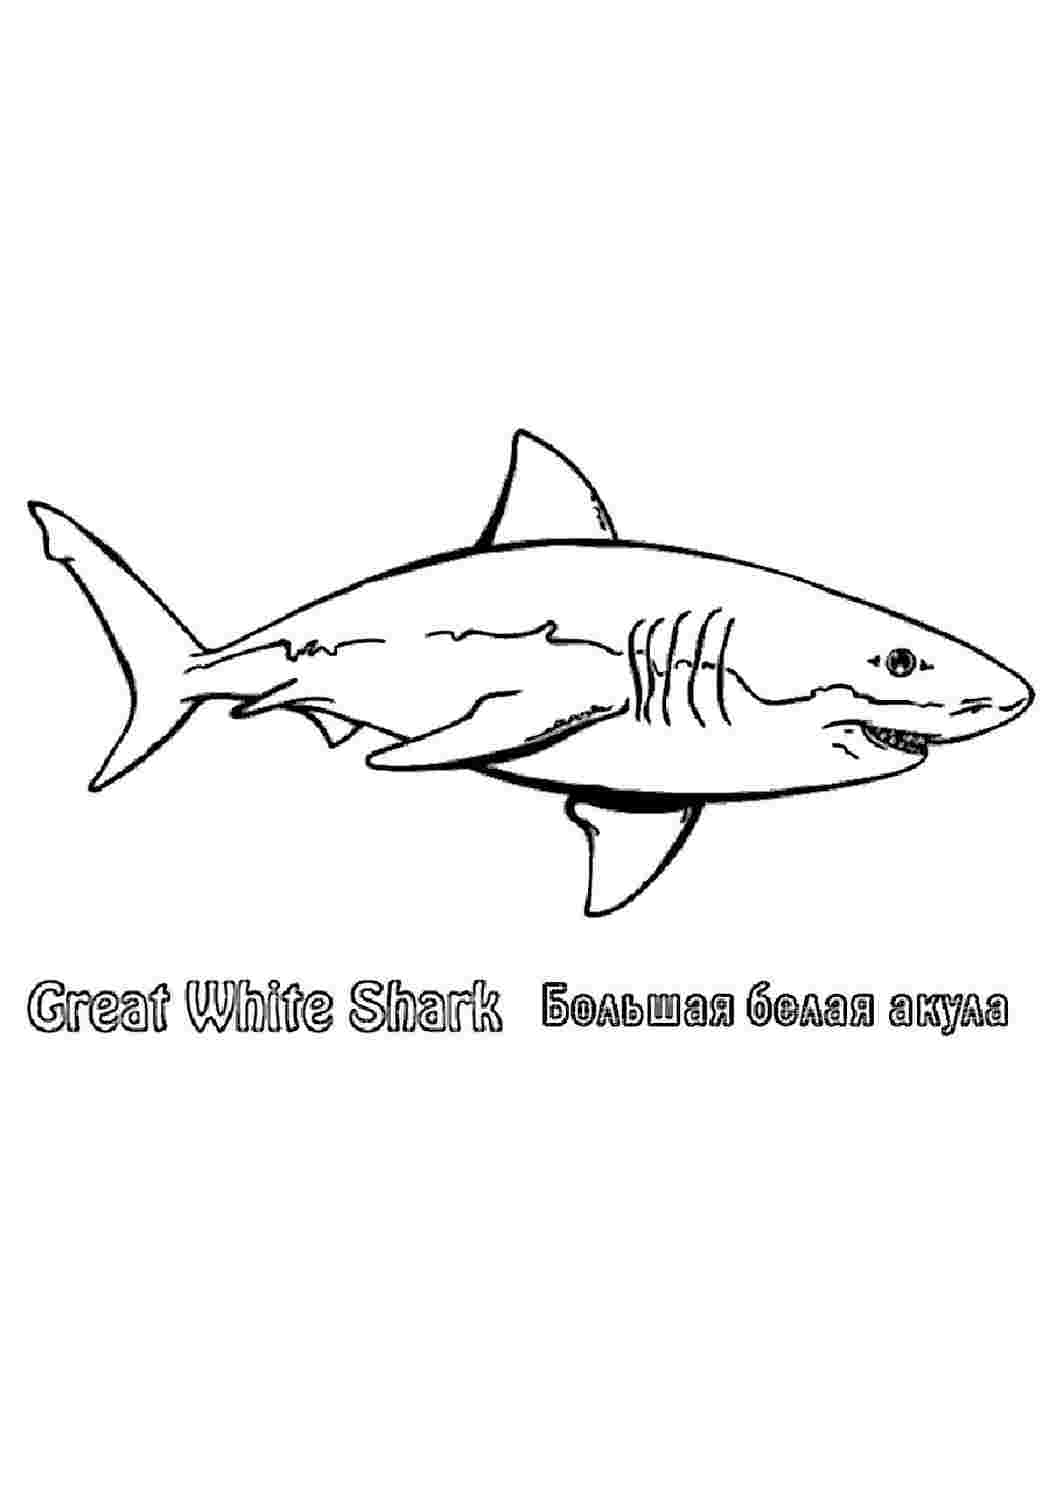 Бесплатные раскраски акула. Распечатать раскраски бесплатно и скачать раскраски онлайн.